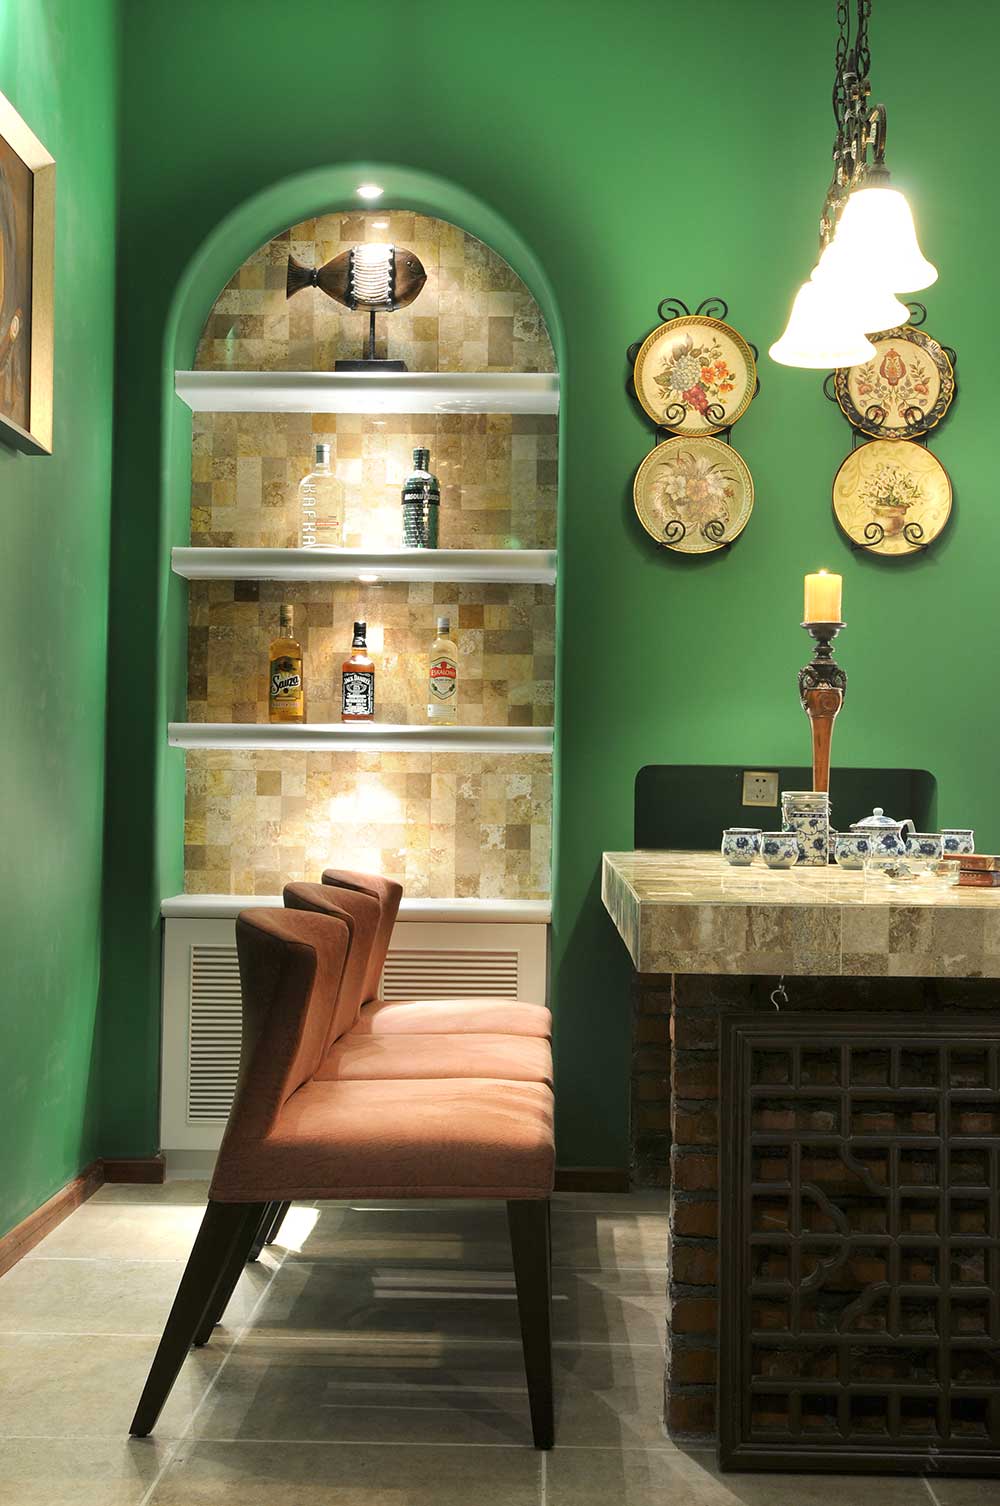 盘子装饰墙面优雅复古，绿色墙面搭配暗红色的餐椅碰撞出时尚感。